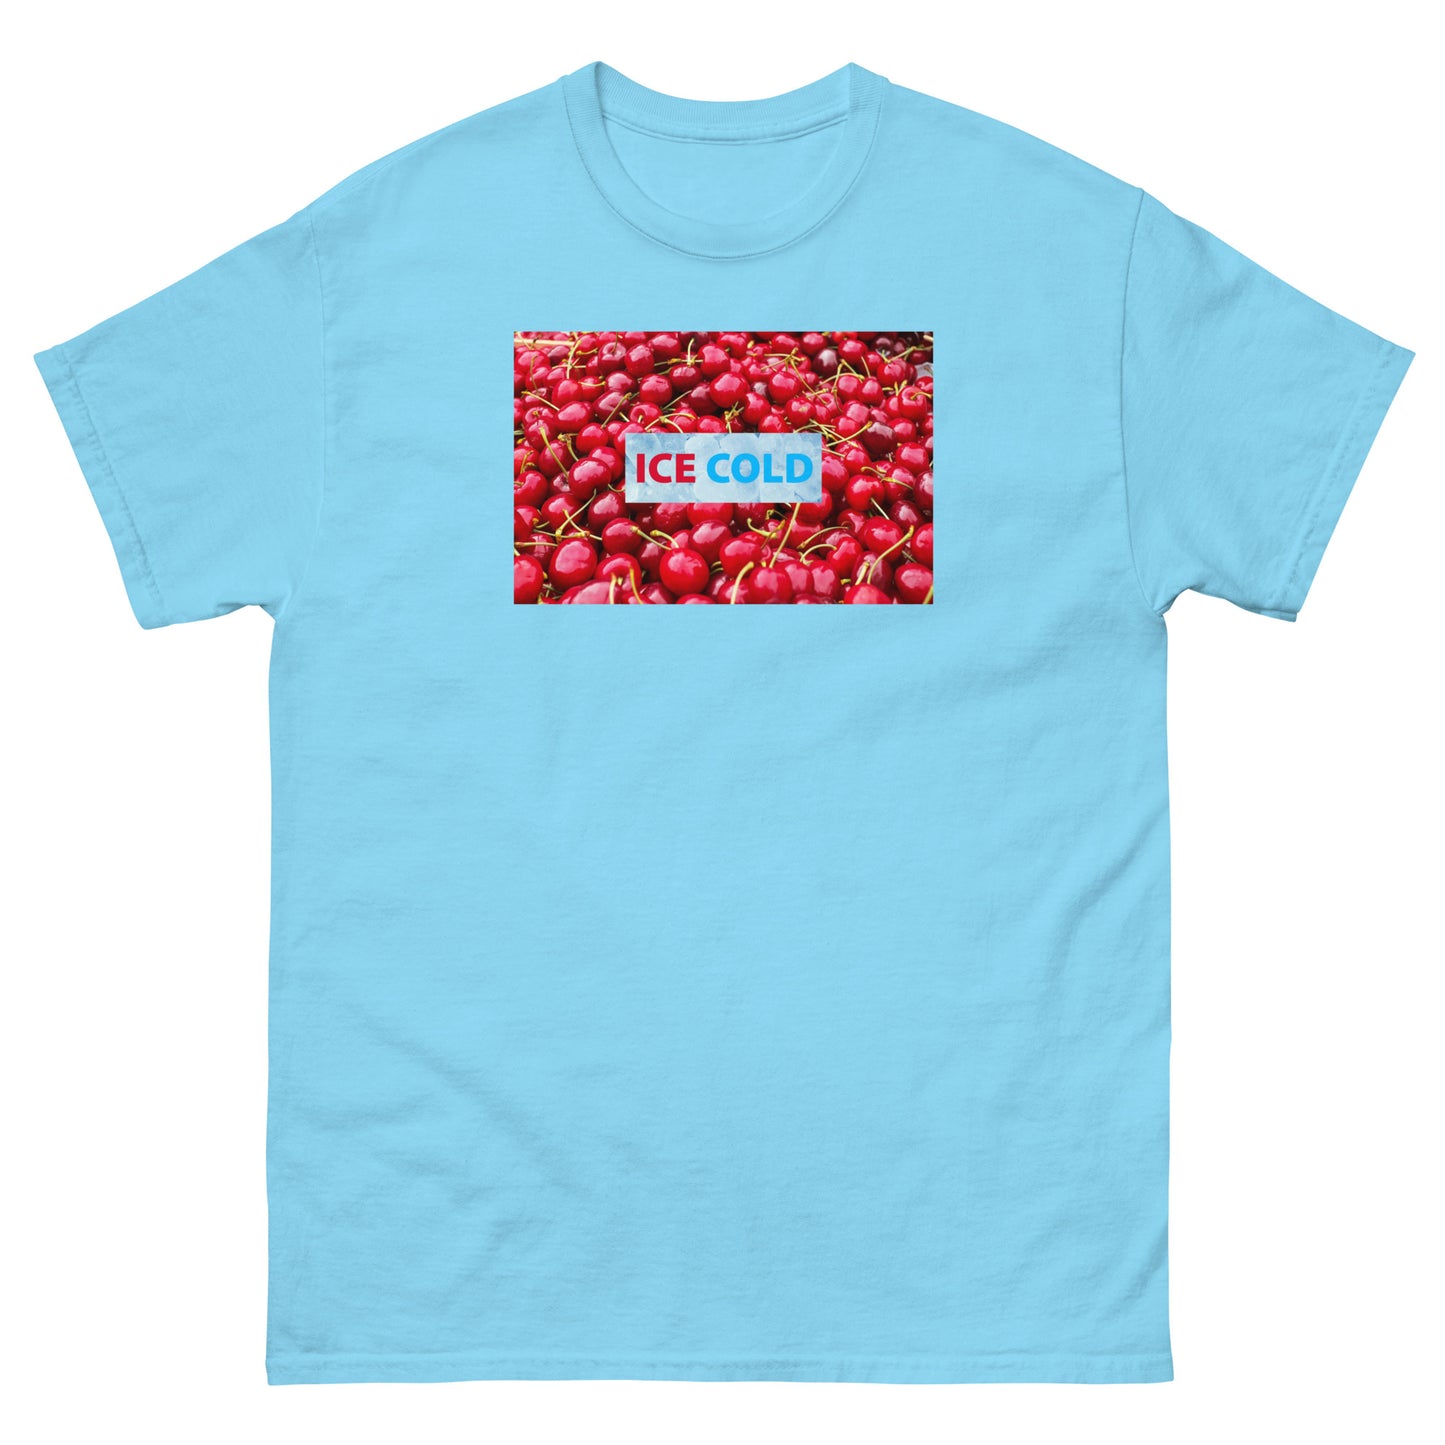 Unisex Ice Cold Cherries Shirt